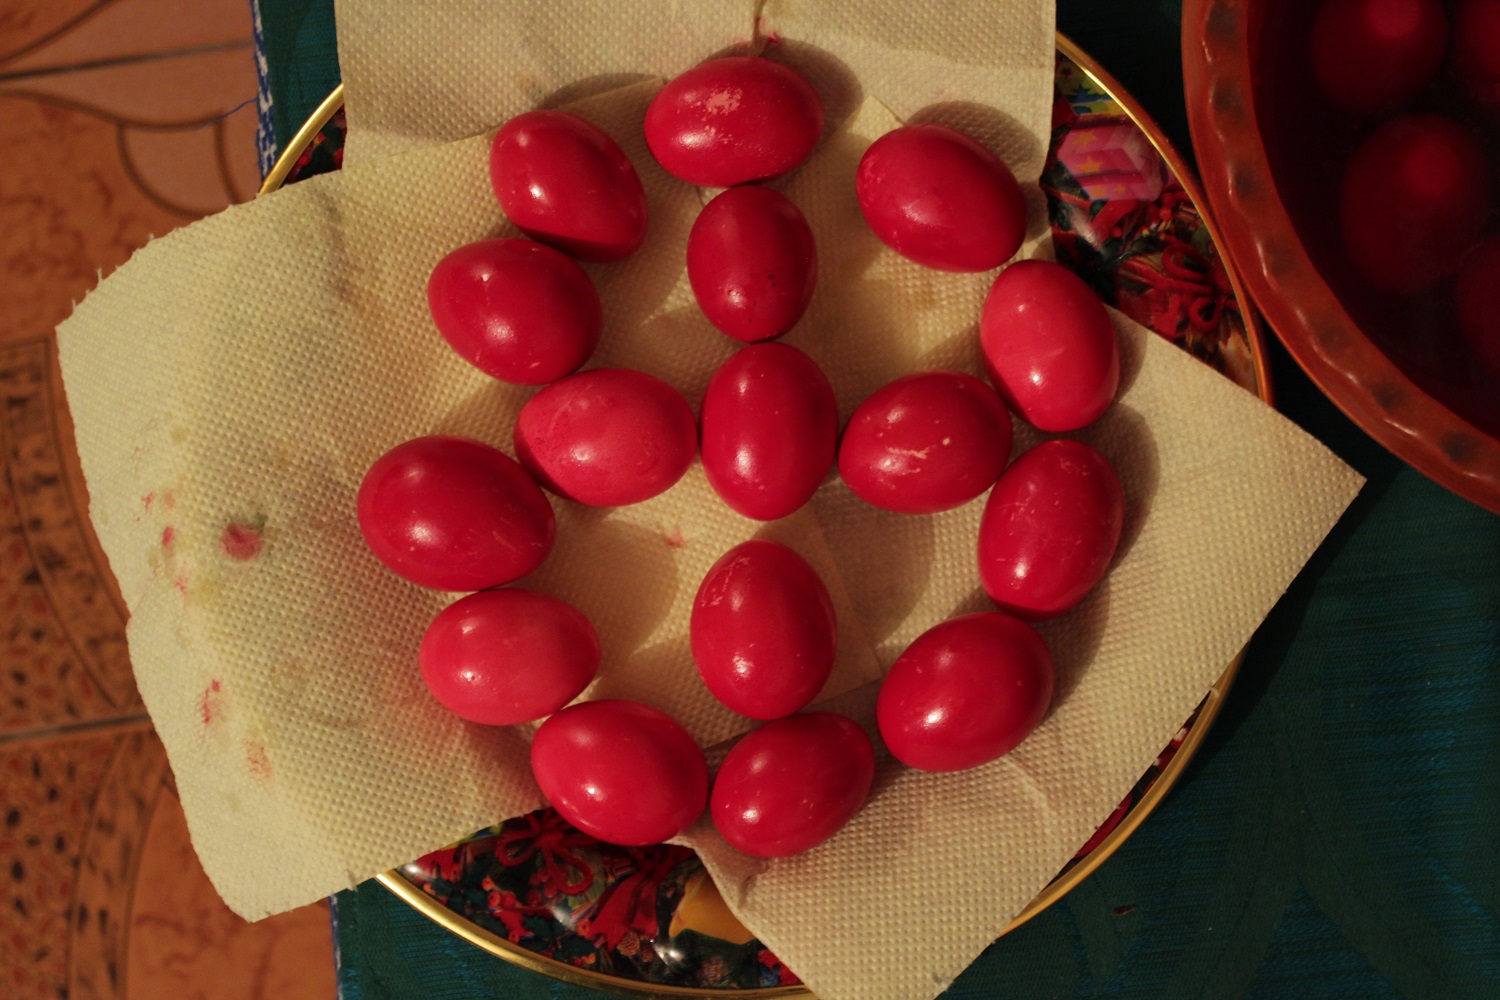 Des œufs peints de la région de Buzau. Ici, ils sont juste colorés en rouge (photo Anamaria Iuga)